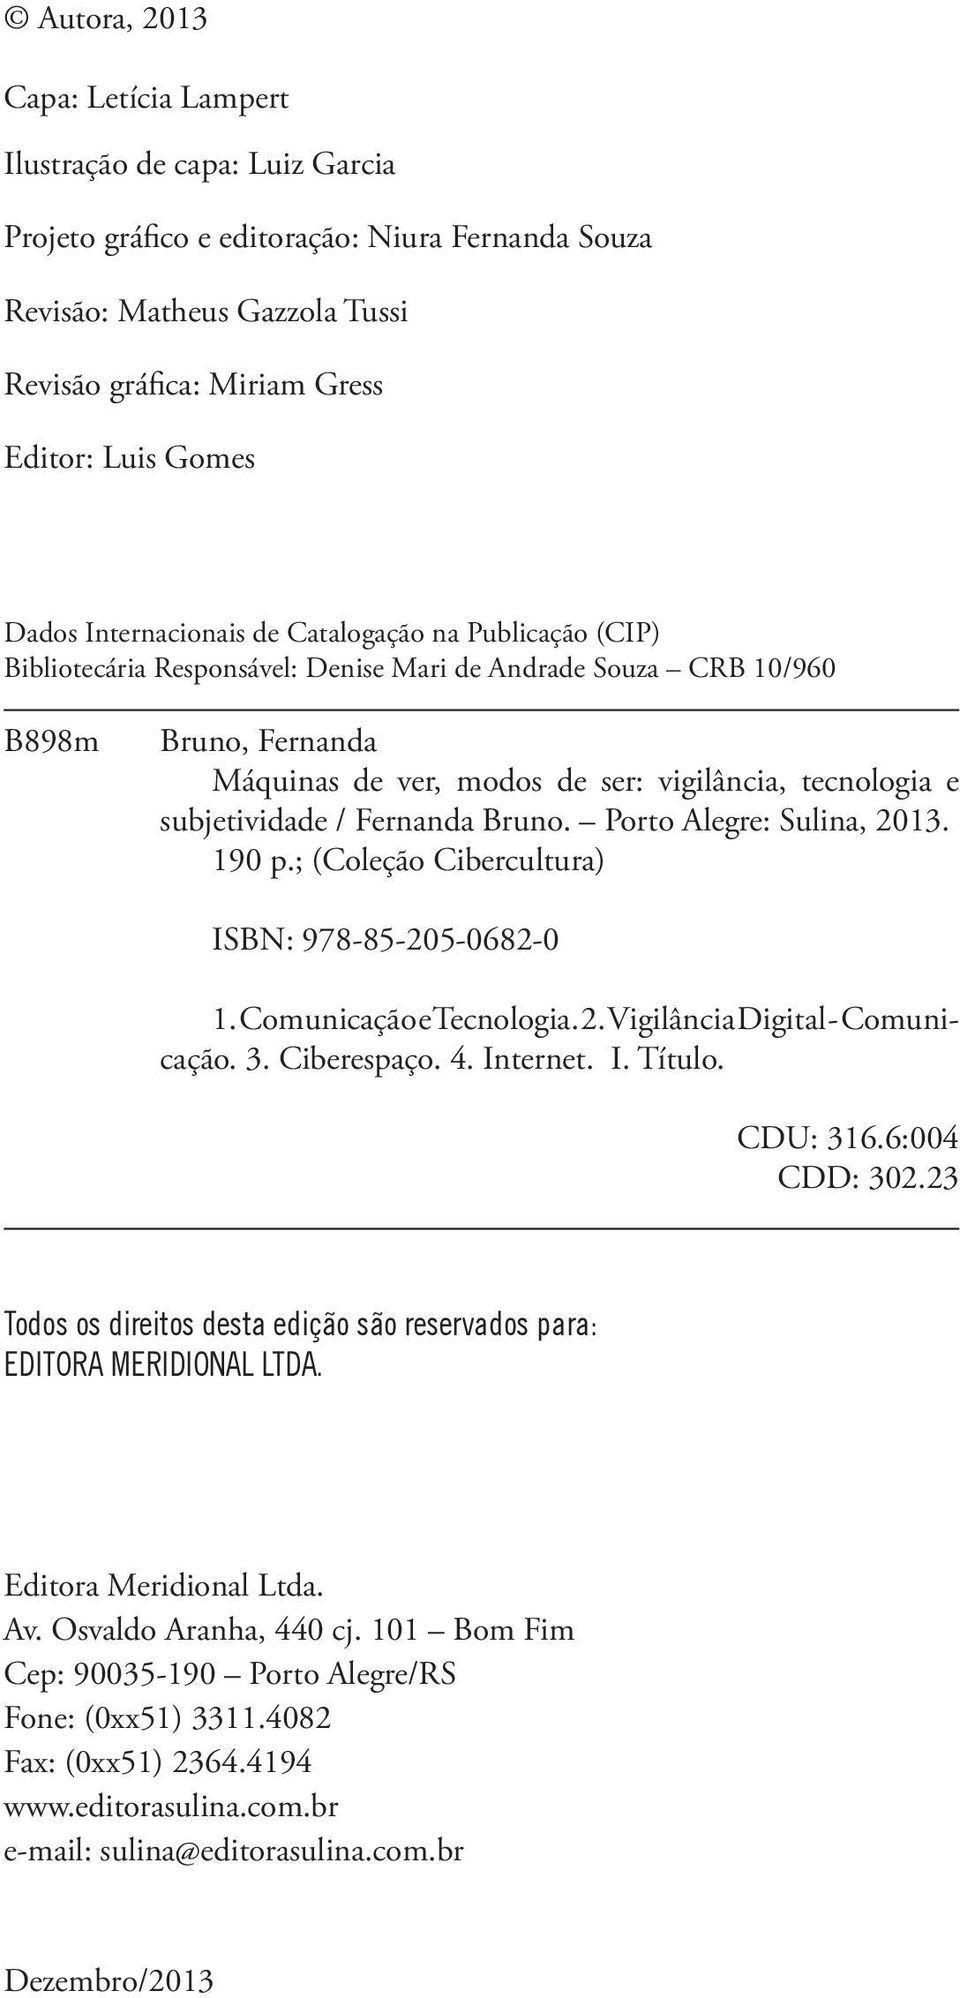 e subjetividade / Fernanda Bruno. Porto Alegre: Sulina, 2013. 190 p.; (Coleção Cibercultura) ISBN: 978-85-205-0682-0 1. Comunicação e Tecnologia. 2. Vigilância Digital - Comunicação. 3. Ciberespaço.